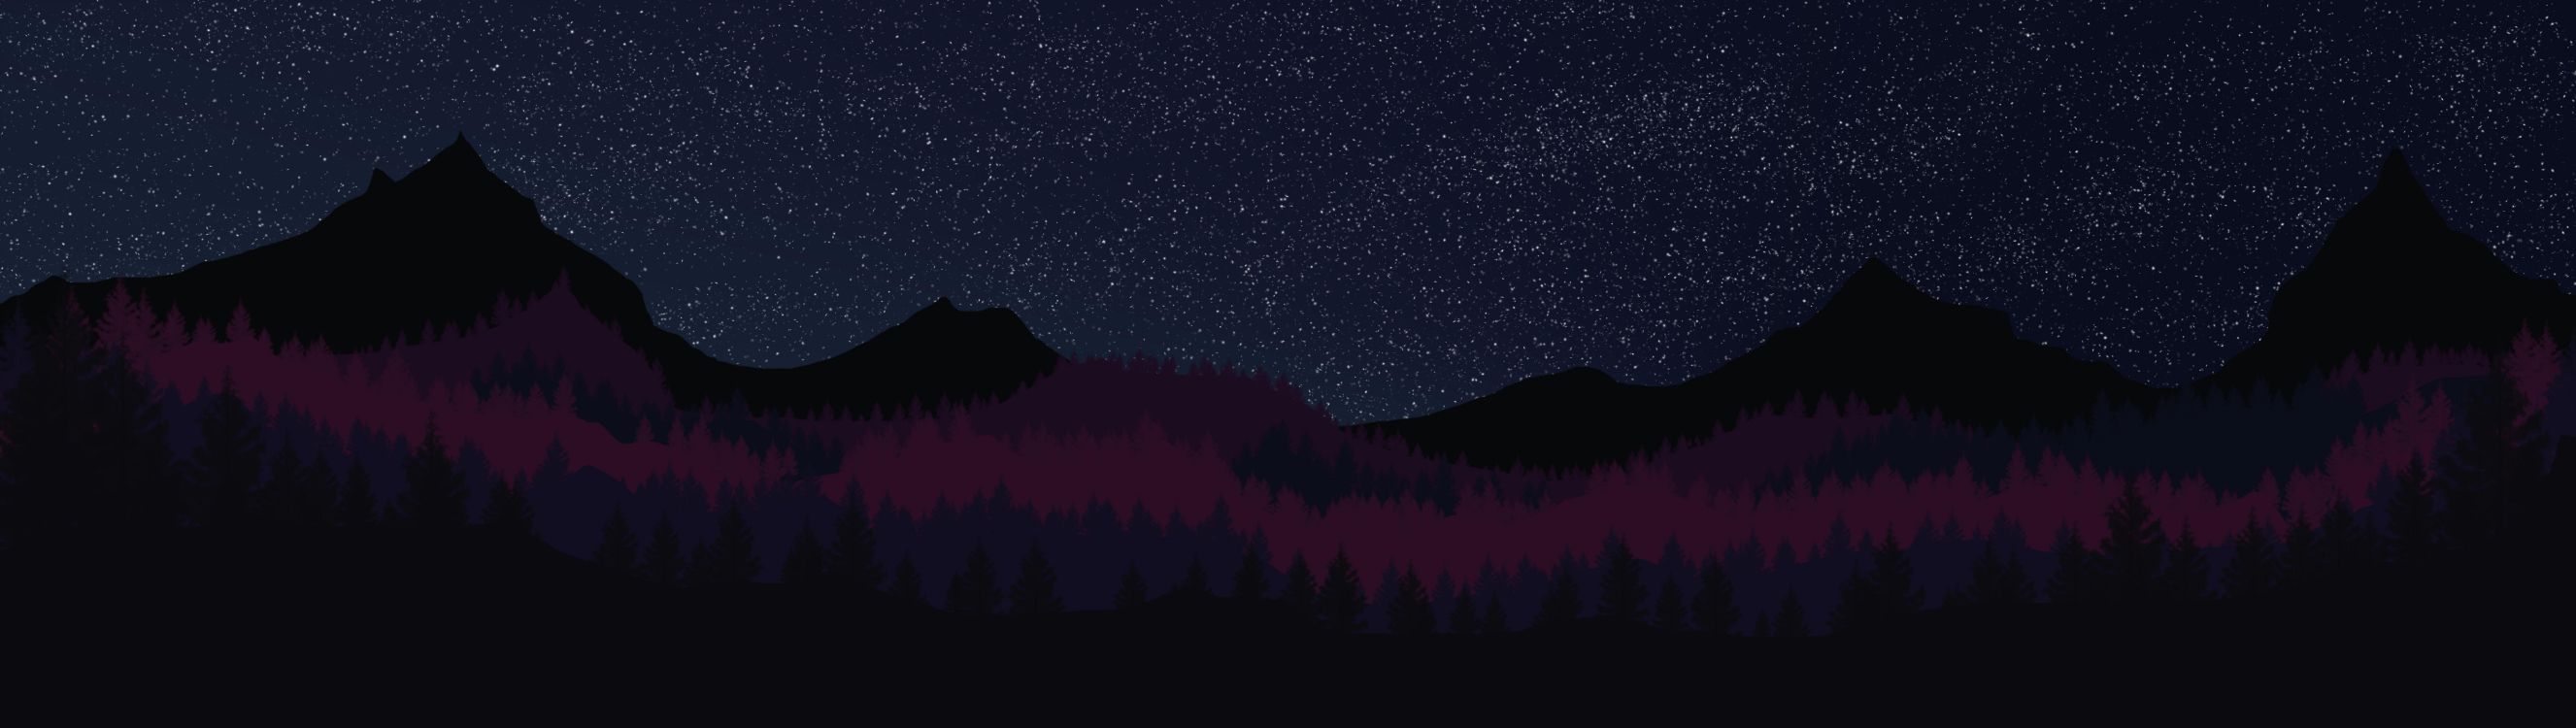 Silhouette Von Bäumen Unter Sternenklarer Nacht. Wallpaper in 12000x3392 Resolution